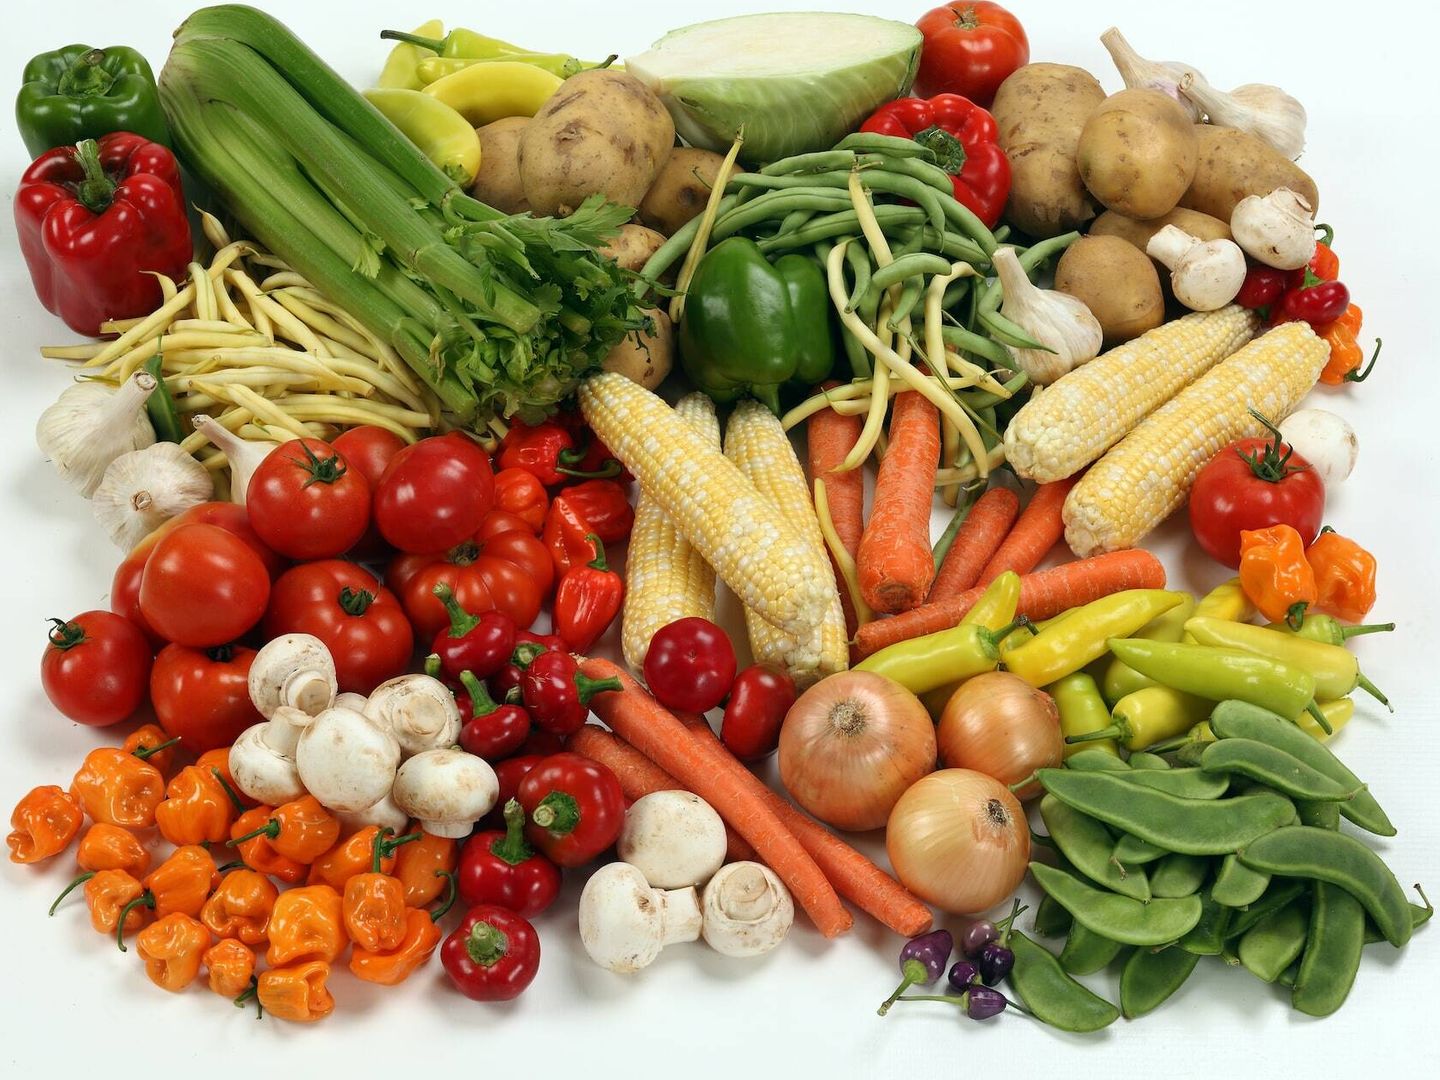 Las verduras saludables deben priorizarse en nuestra dieta. (Randy Fath para Unsplash)